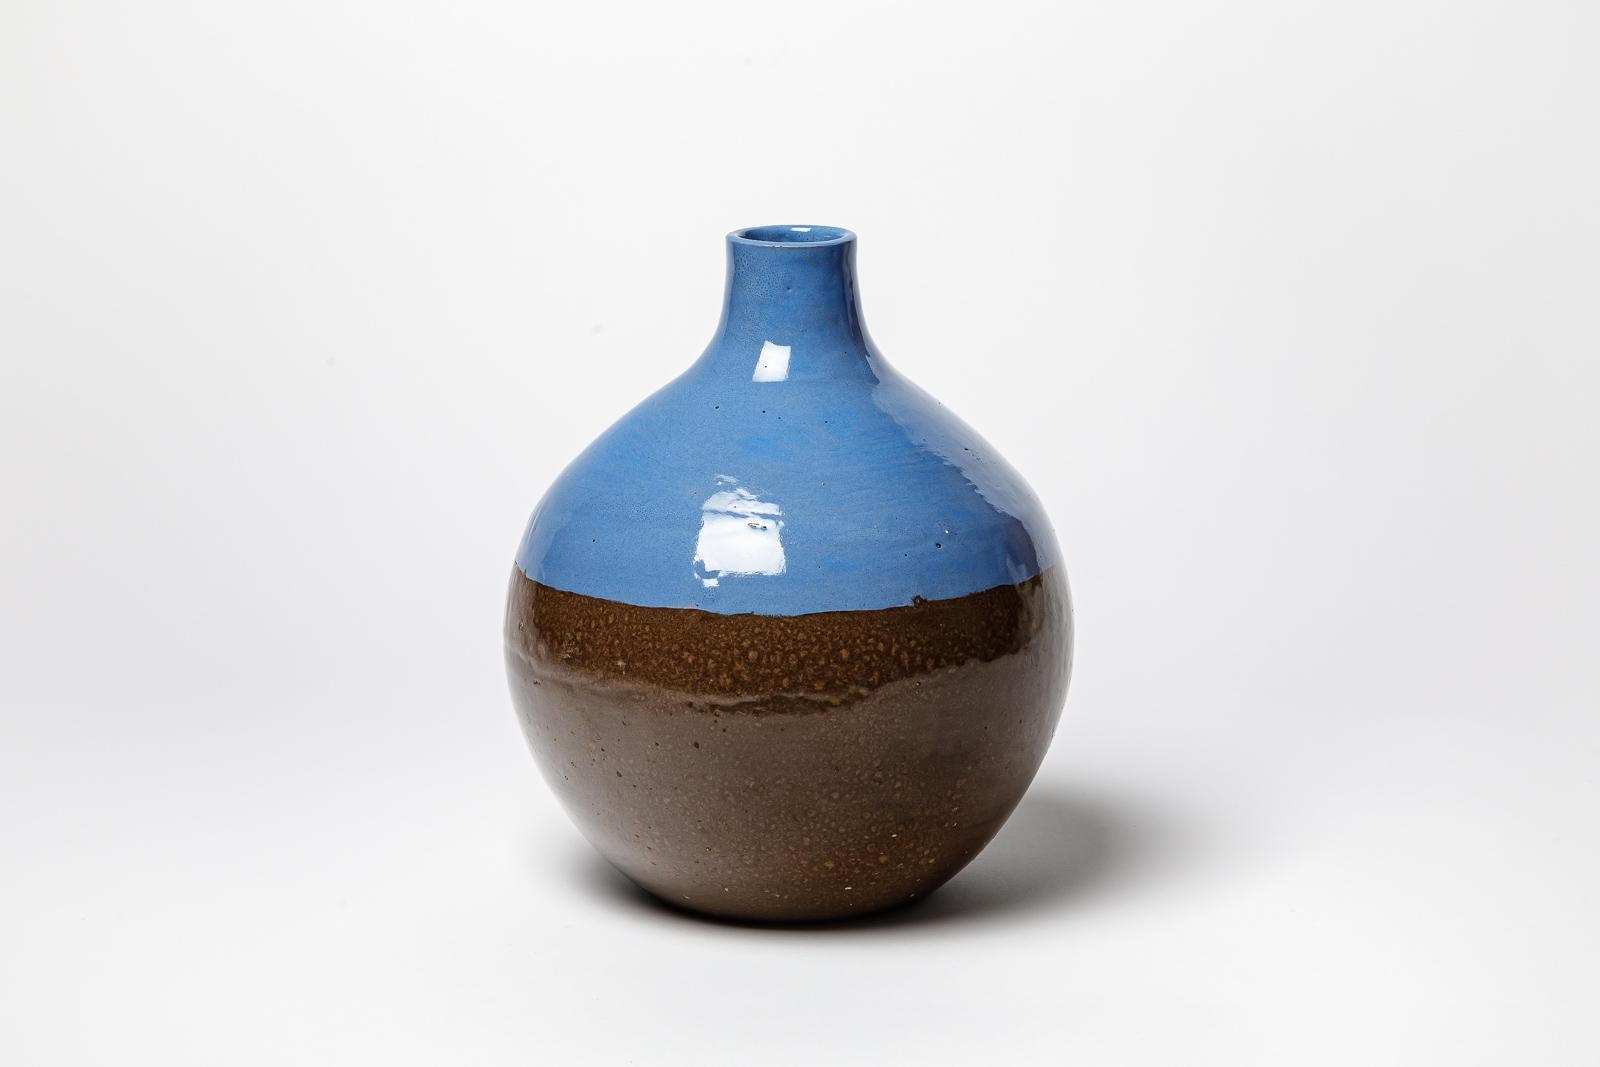 French Blue glazed ceramic vase by CAB (Céramiques d’art de Bordeaux) for la Maitrise. For Sale